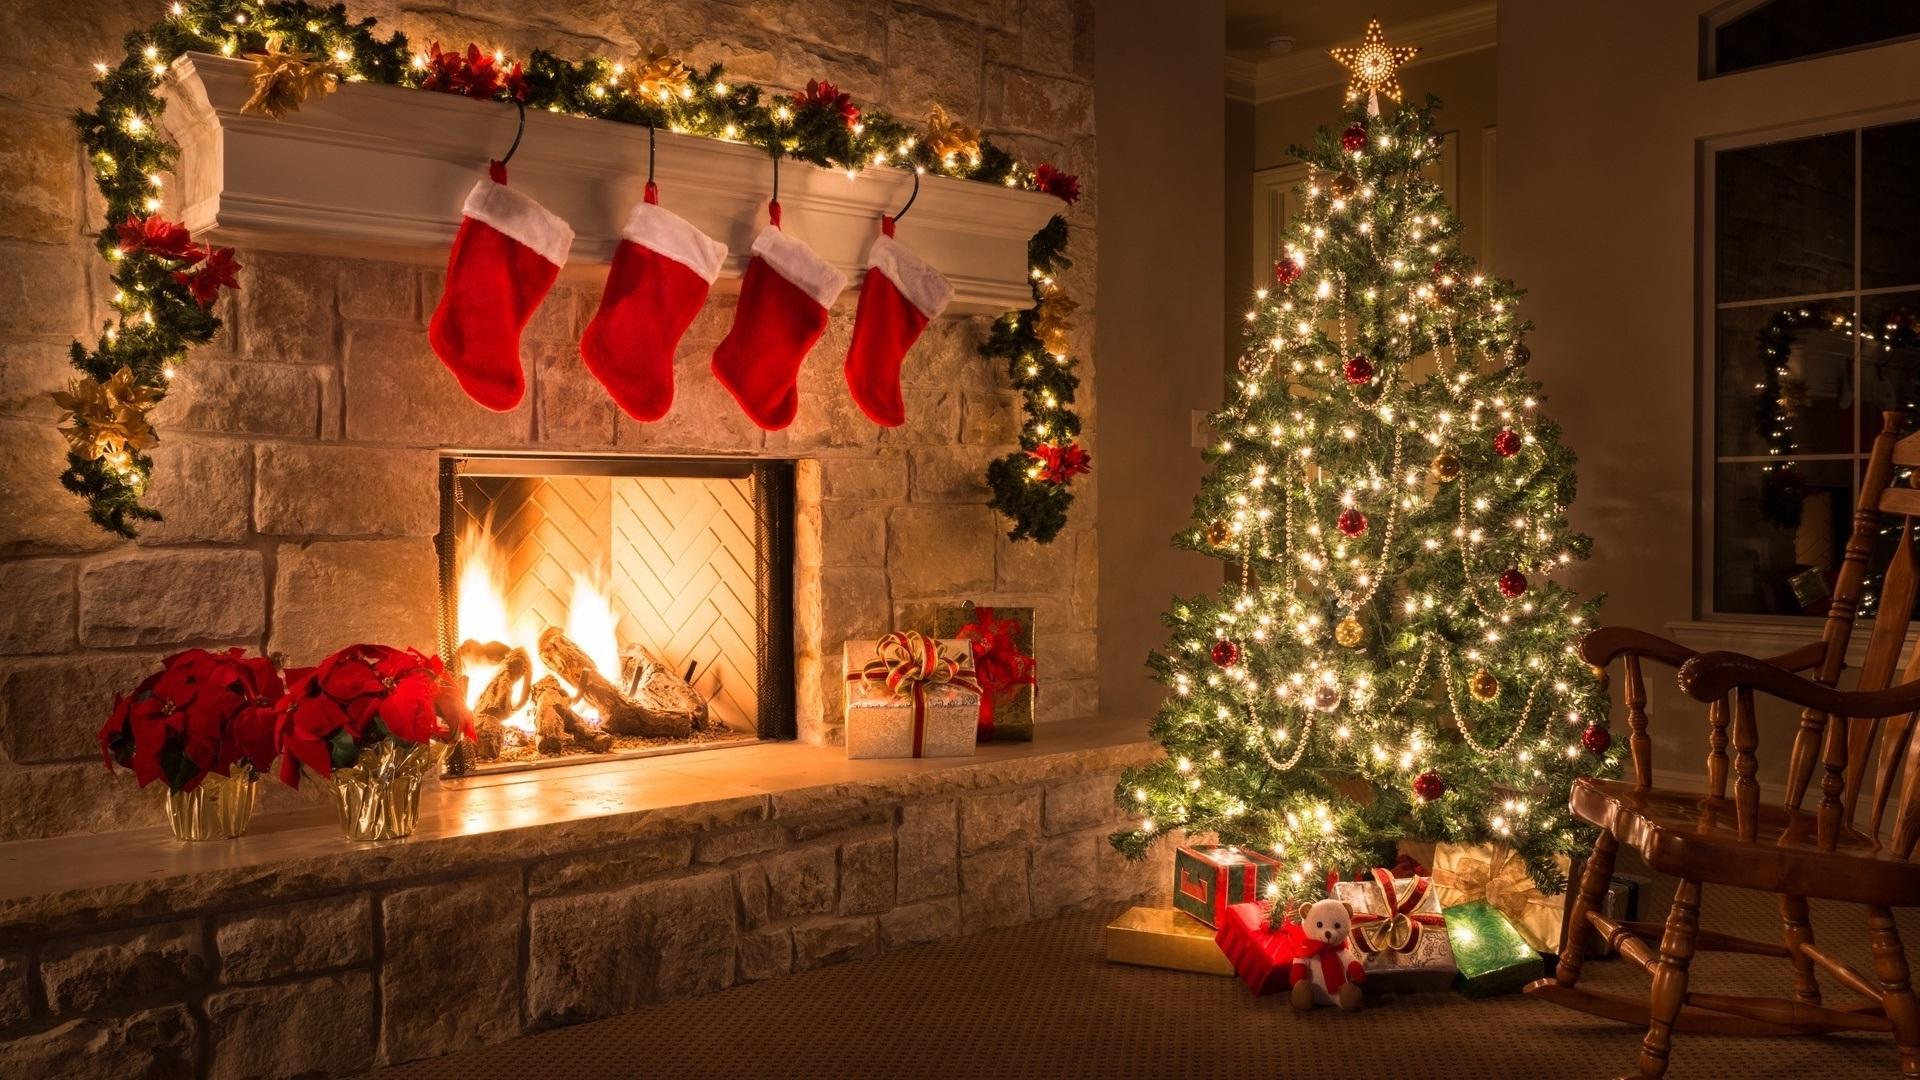 Hình nền nhà Giáng Sinh: Chuyển đổi bầu không khí trong căn nhà của bạn với hình nền Giáng Sinh tuyệt đẹp, mang đến không gian sống trong lành, ấm cúng và tràn đầy niềm vui. Những hình nền này sẽ giúp thay đổi màn hình chính của bạn một cách dễ dàng và nhanh chóng.